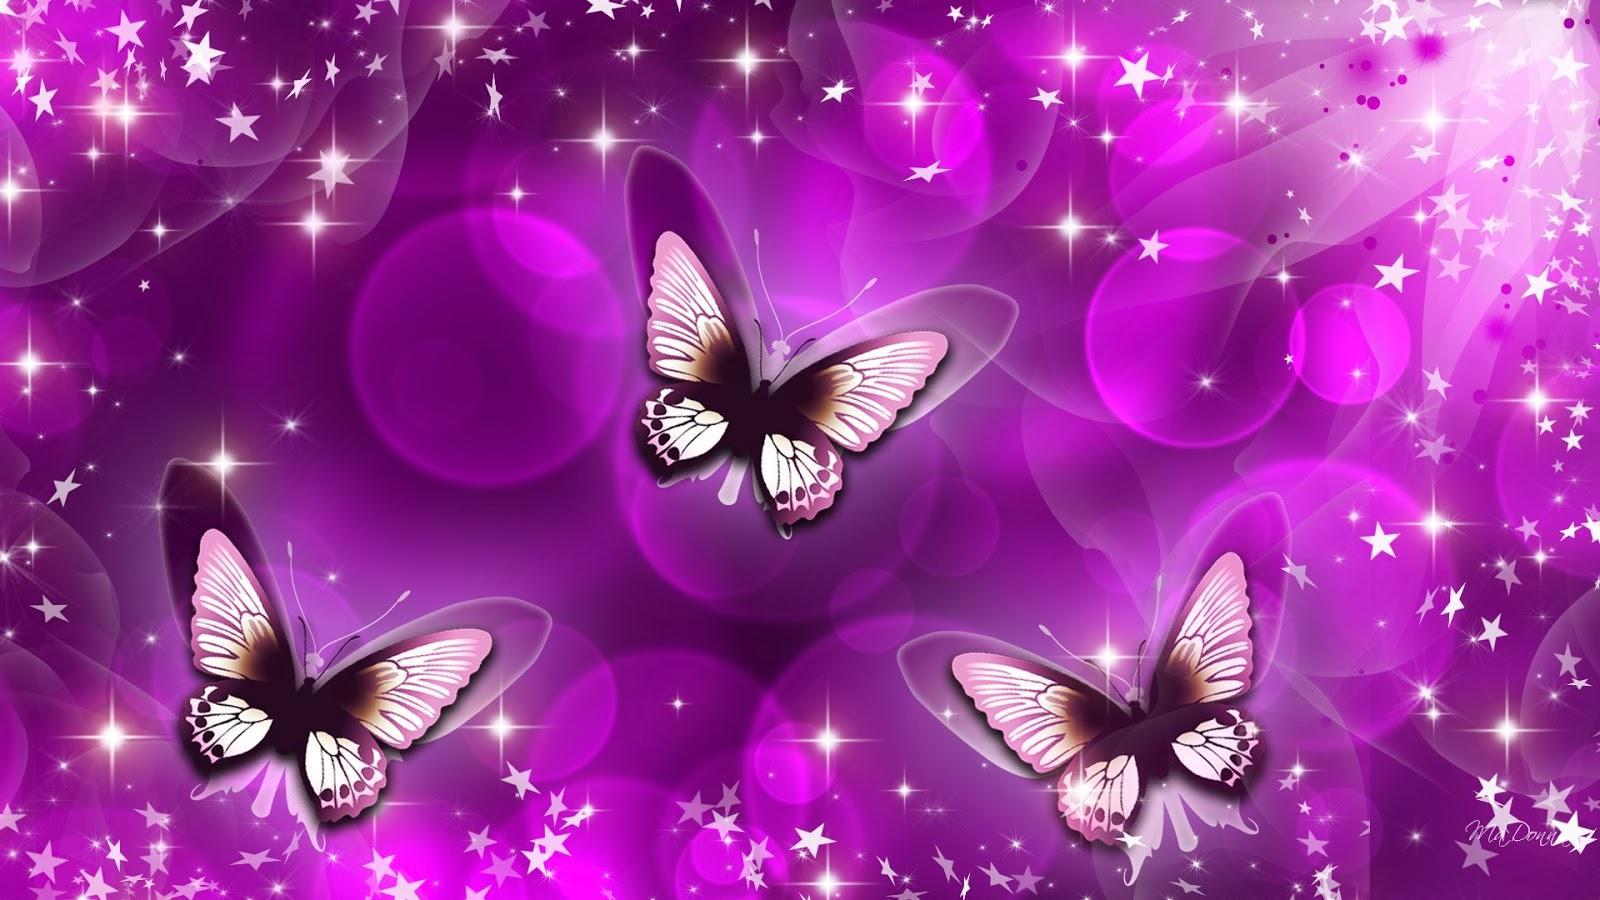 HD Butterfly Wallpaper Free Download